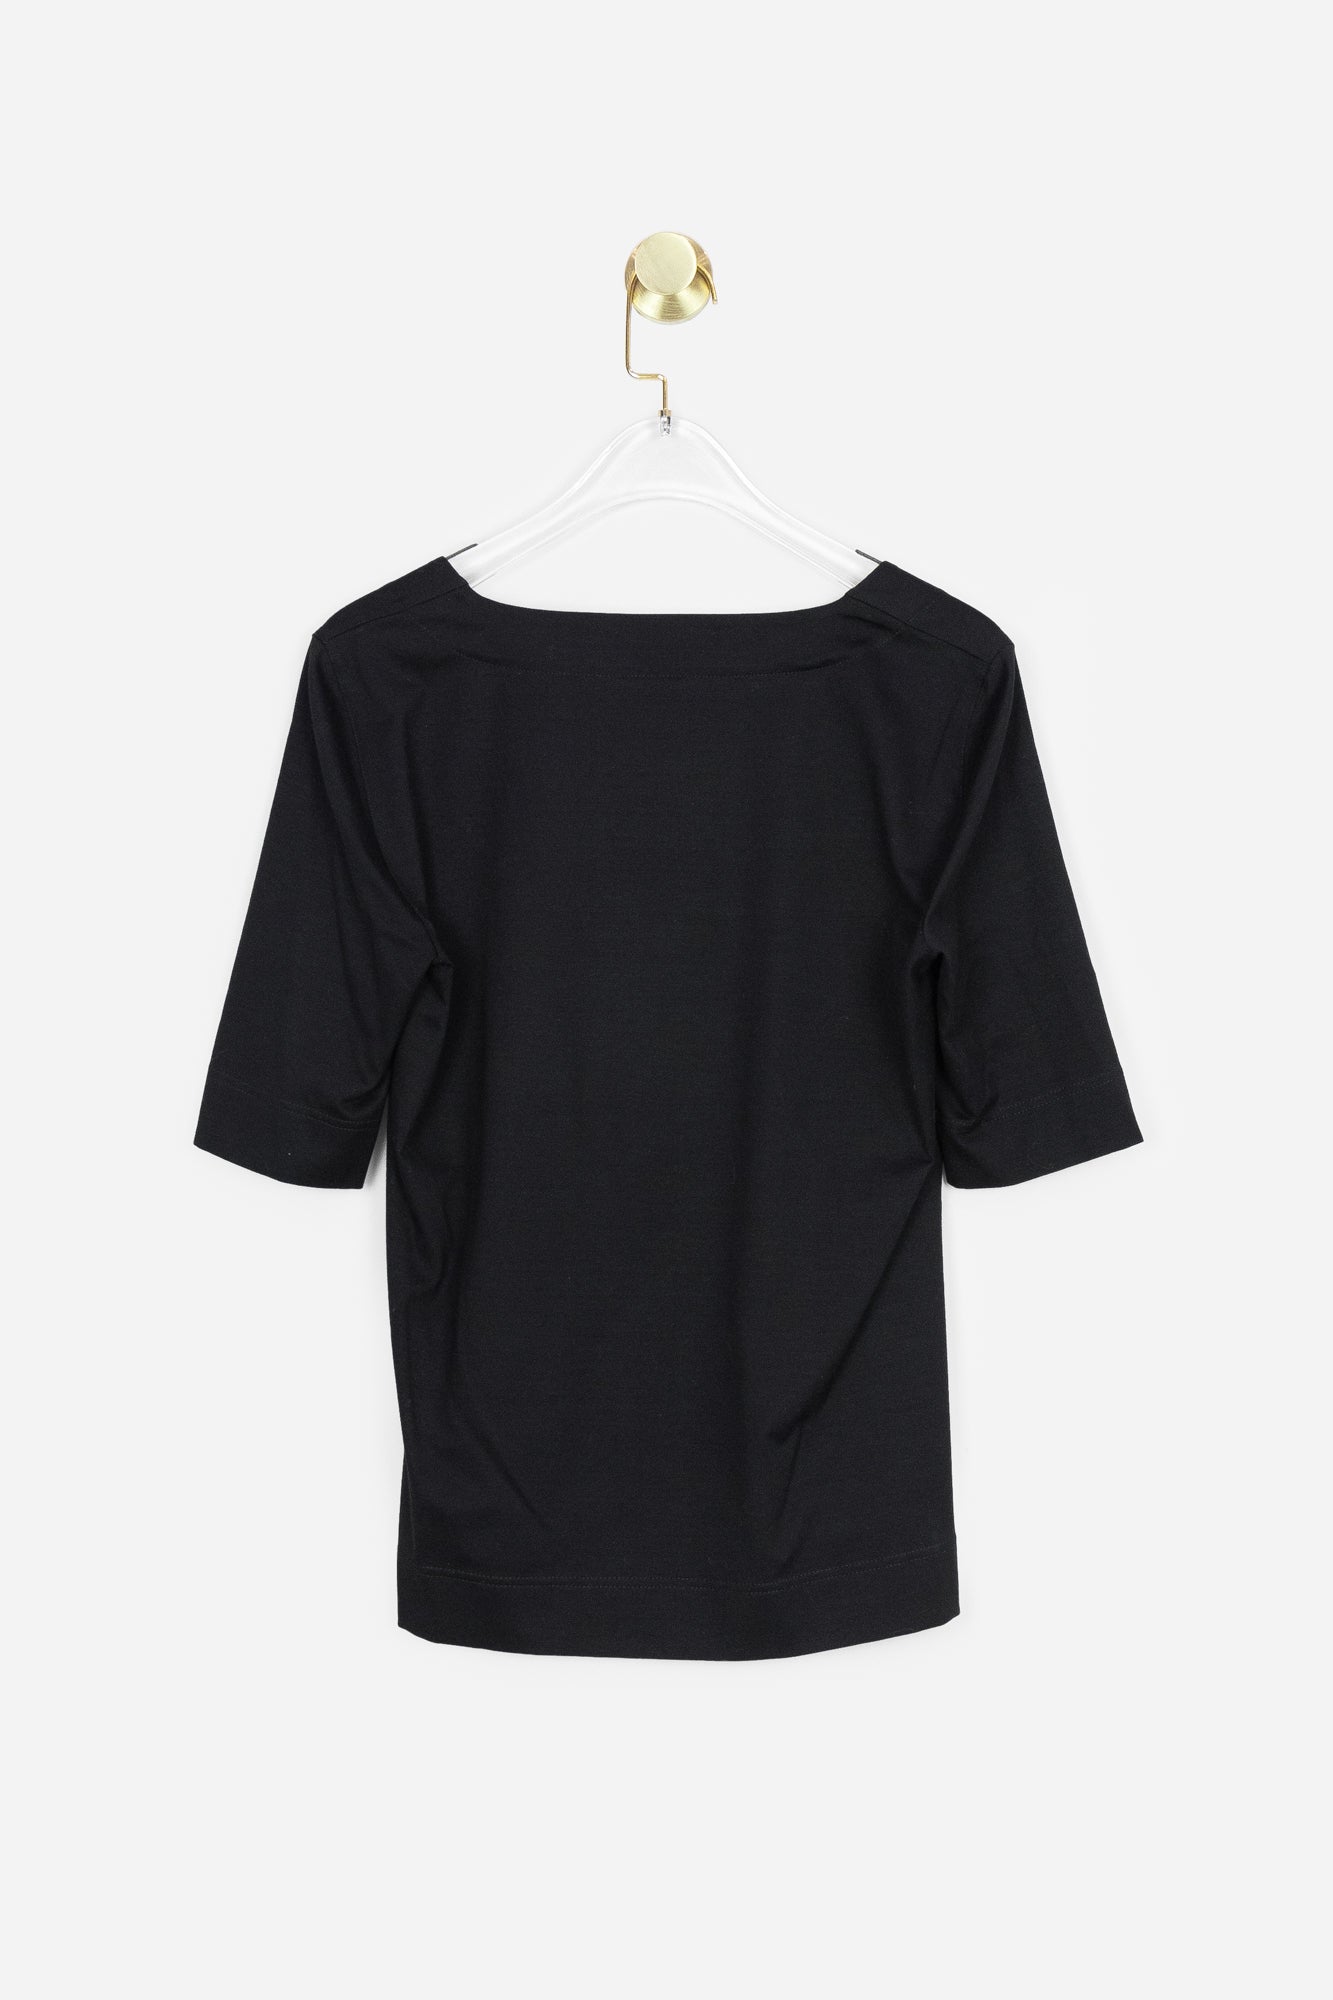 Black Squared Neck T-Shirt